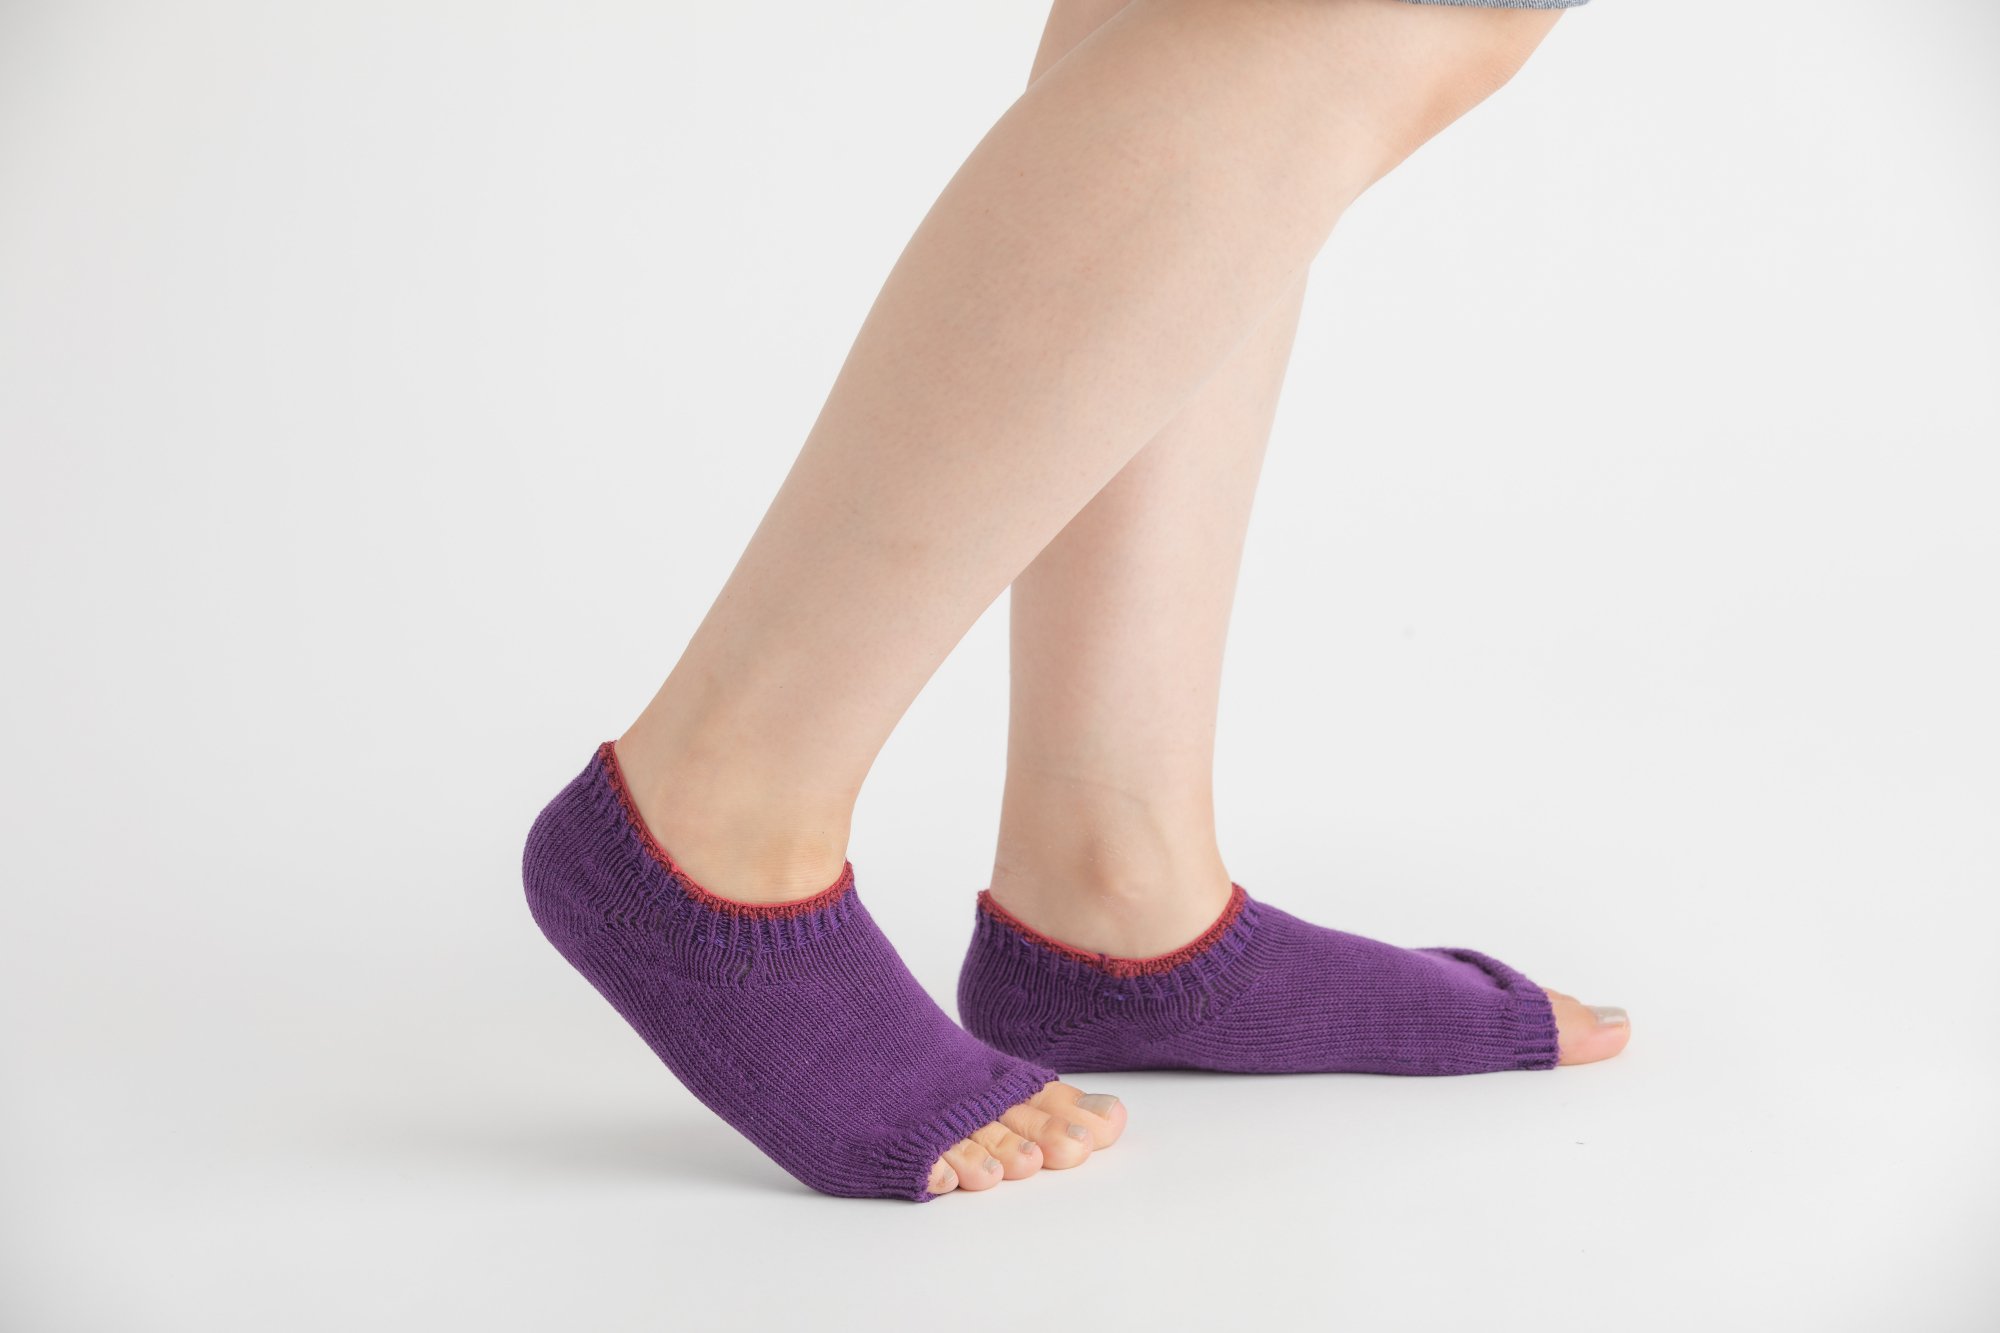 オープントゥソックスは足指を開放する新しい形の靴下です